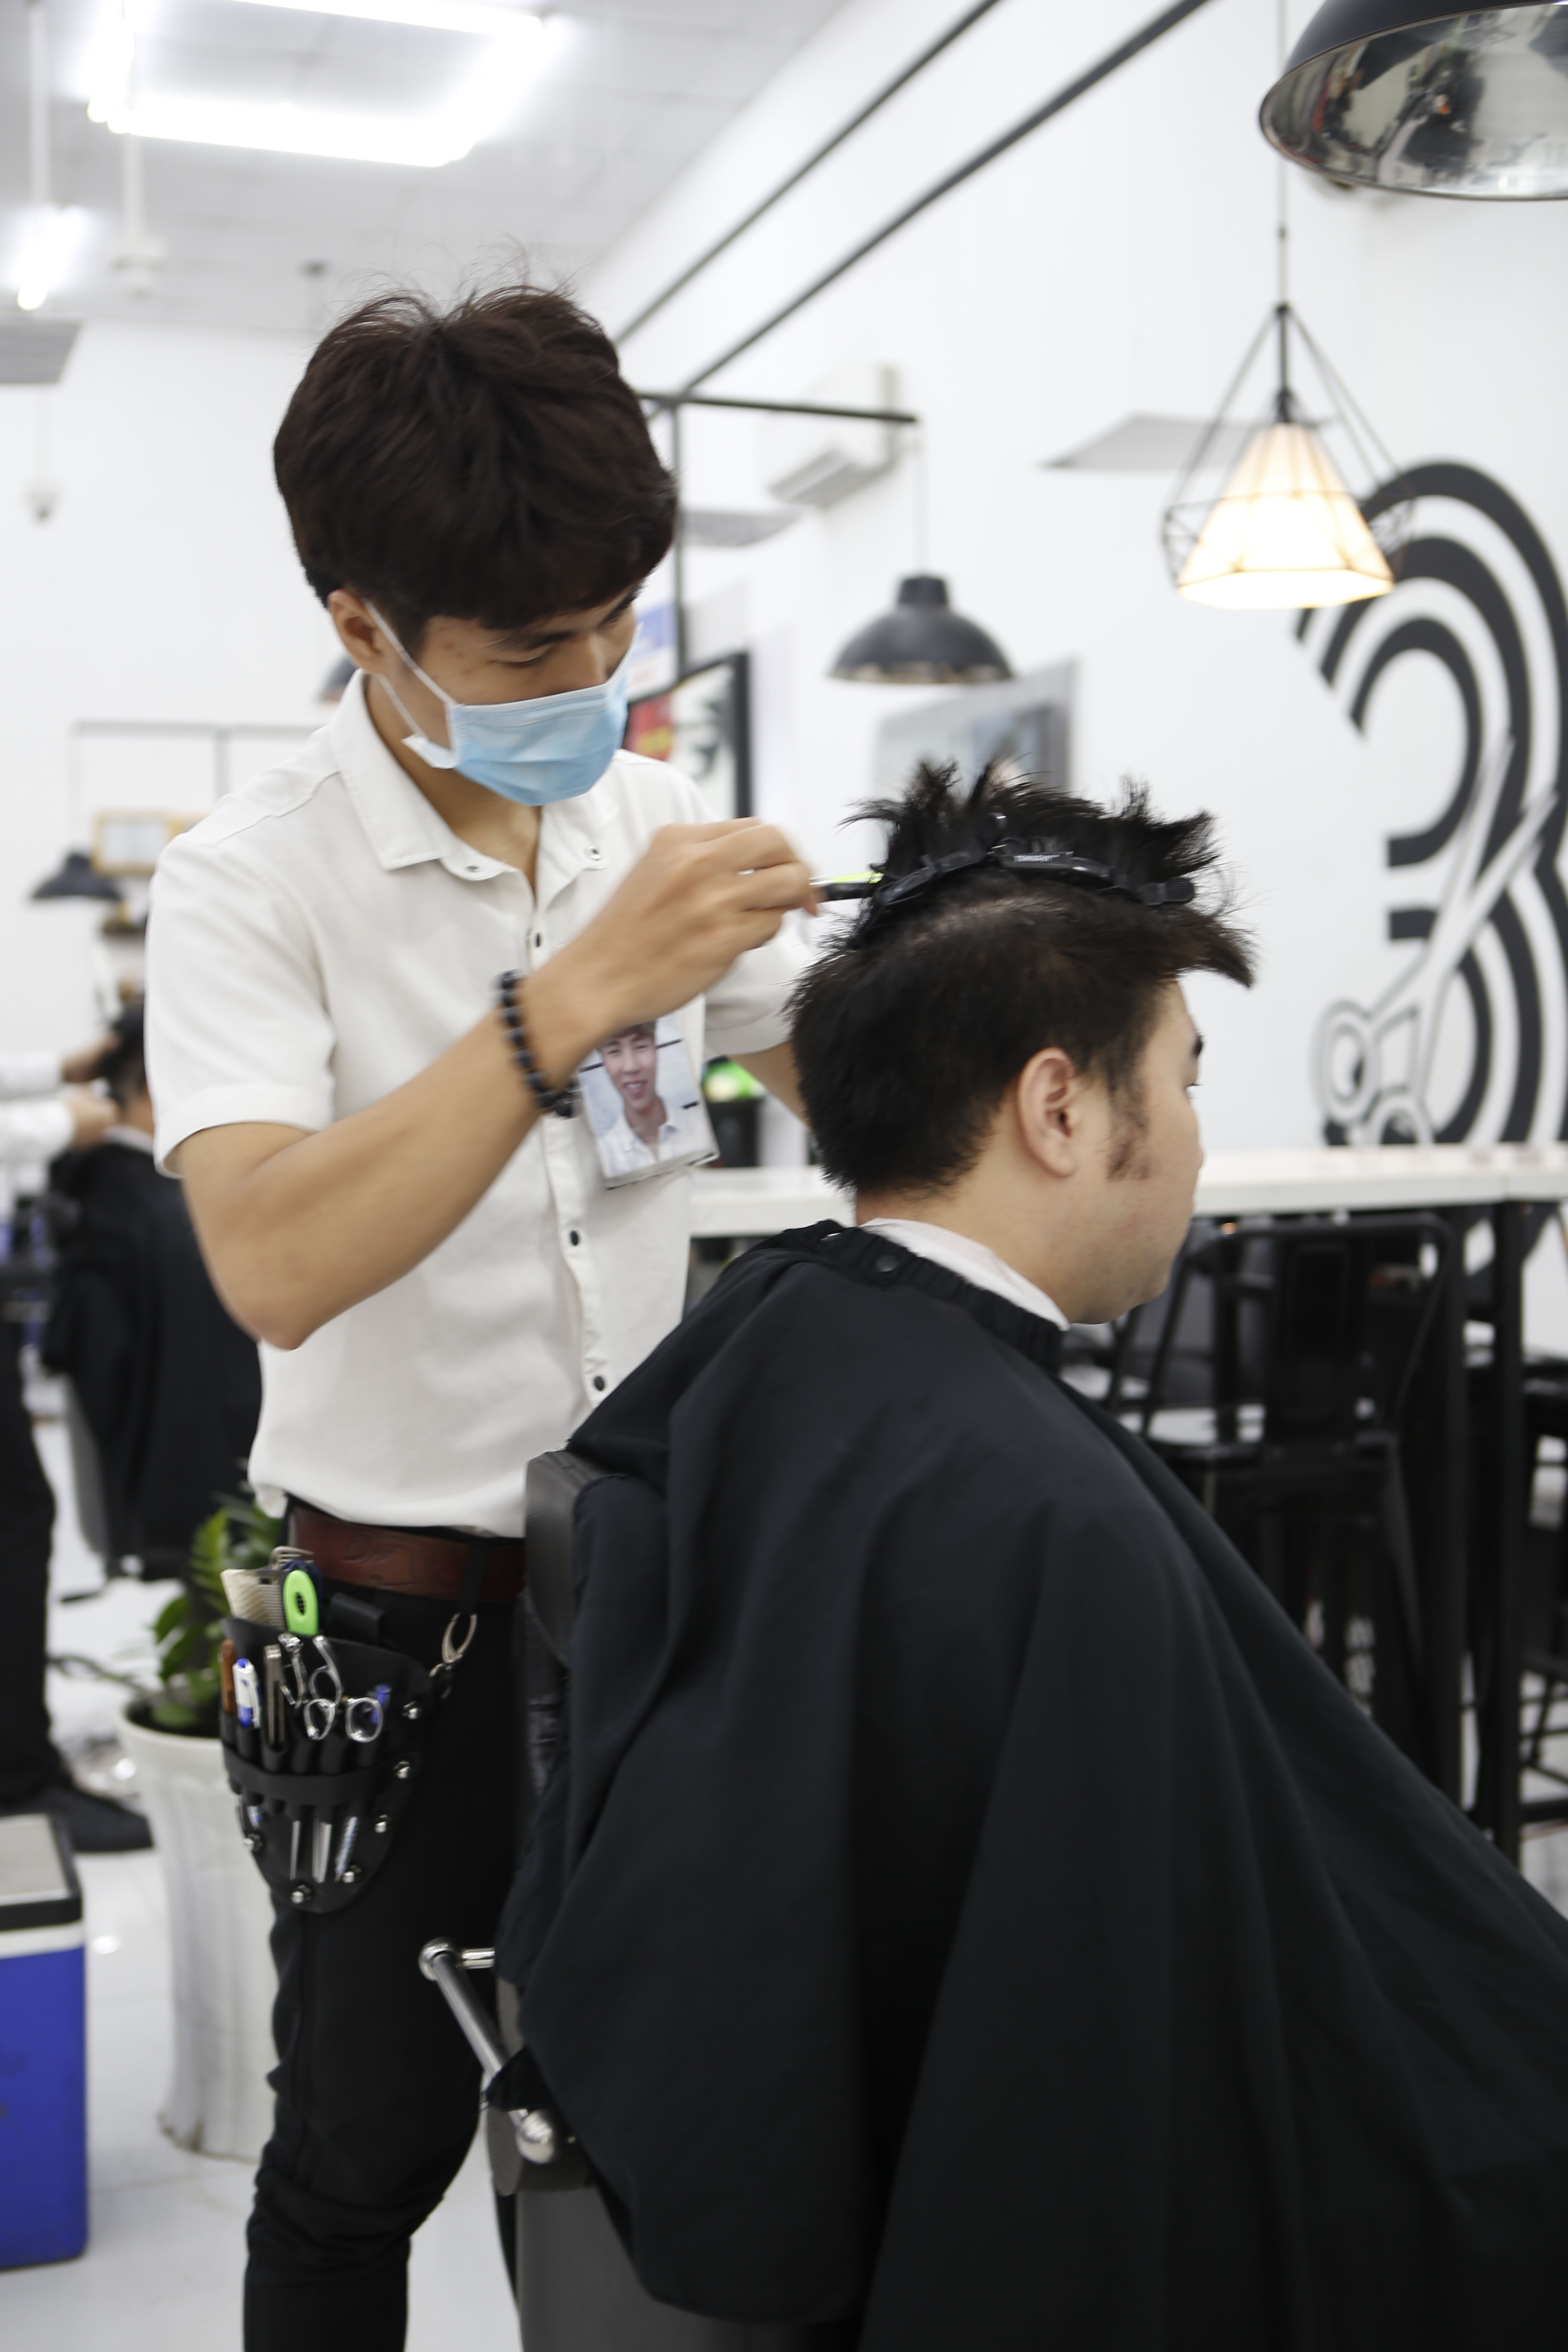 CEO chuỗi cắt tóc đàn ông lớn nhất Việt Nam Sợ khách hàng ở nhà lâu quá  không chịu nổi tự cắt trọc hết thì 30Shine thất nghiệp dài